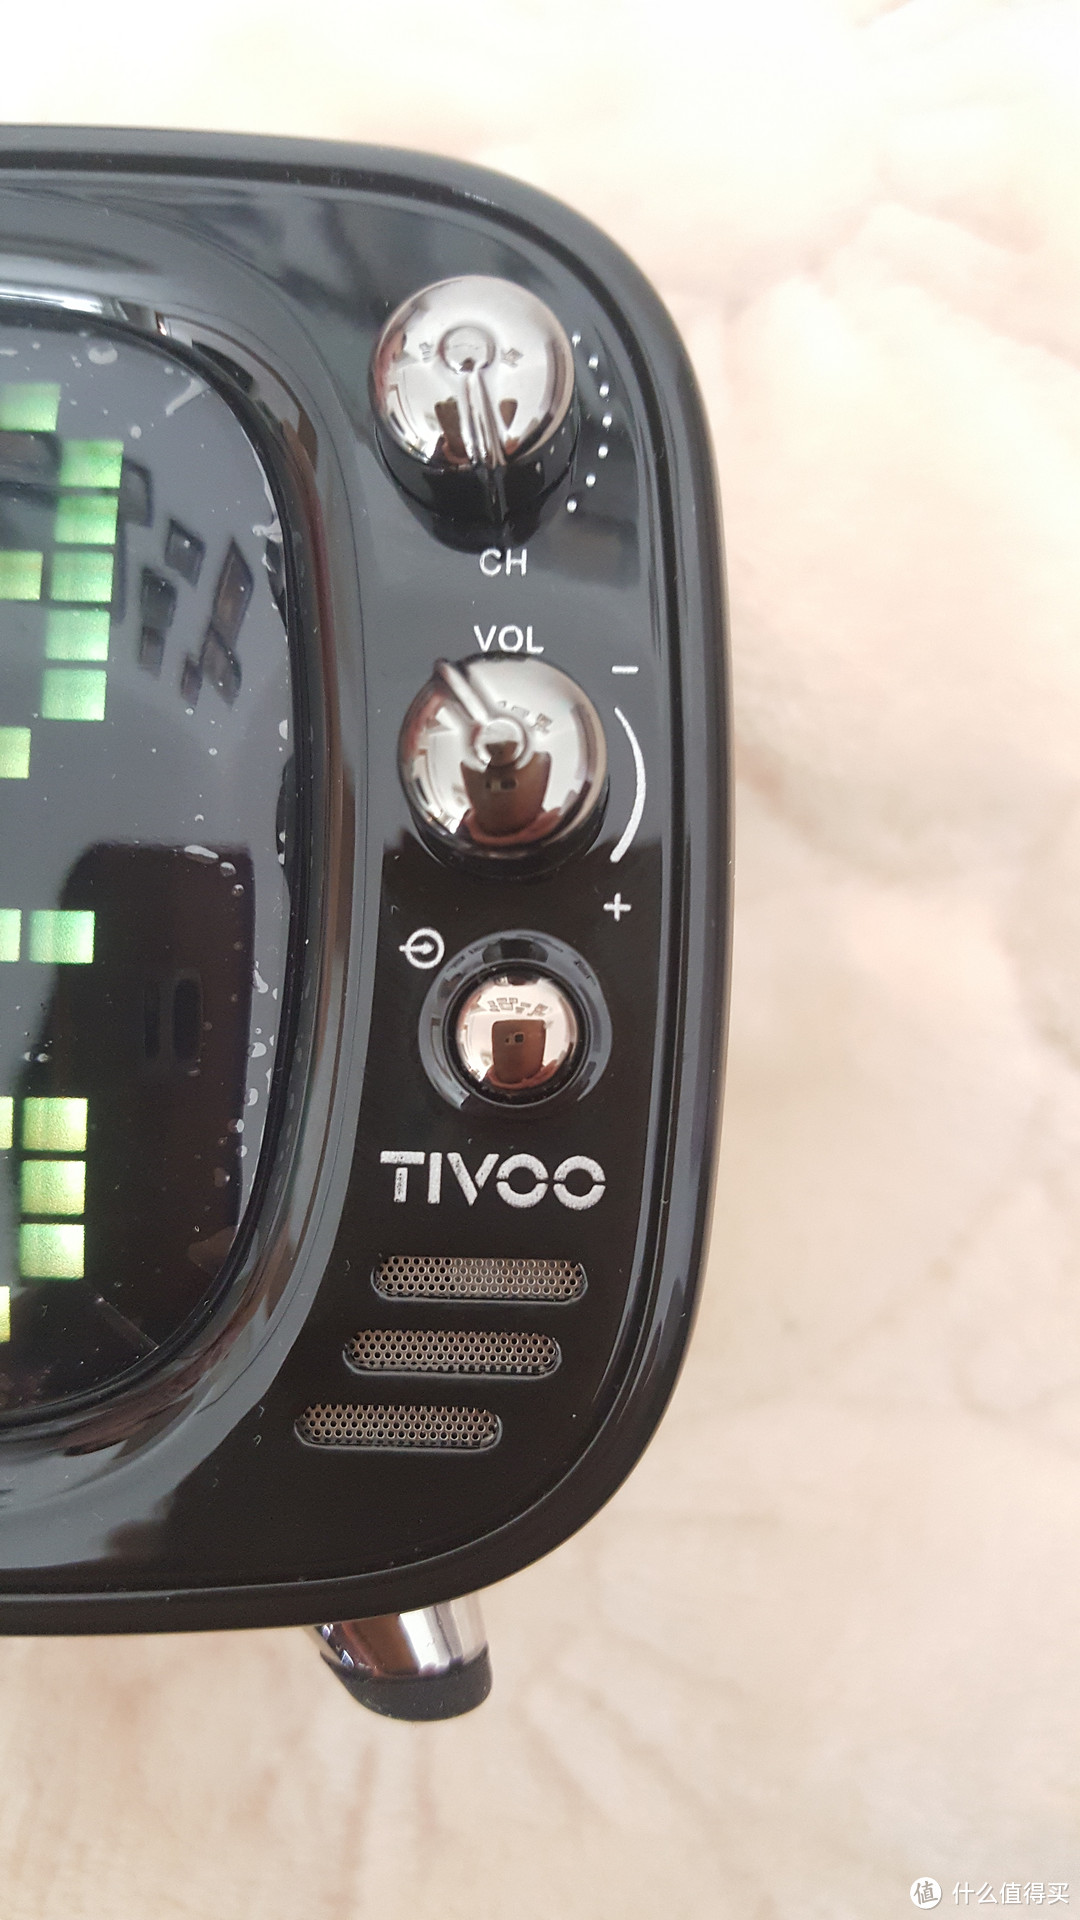 电视？音箱？还是回忆：好玩的音响——Divoom Tivoo像素蓝牙音箱评测